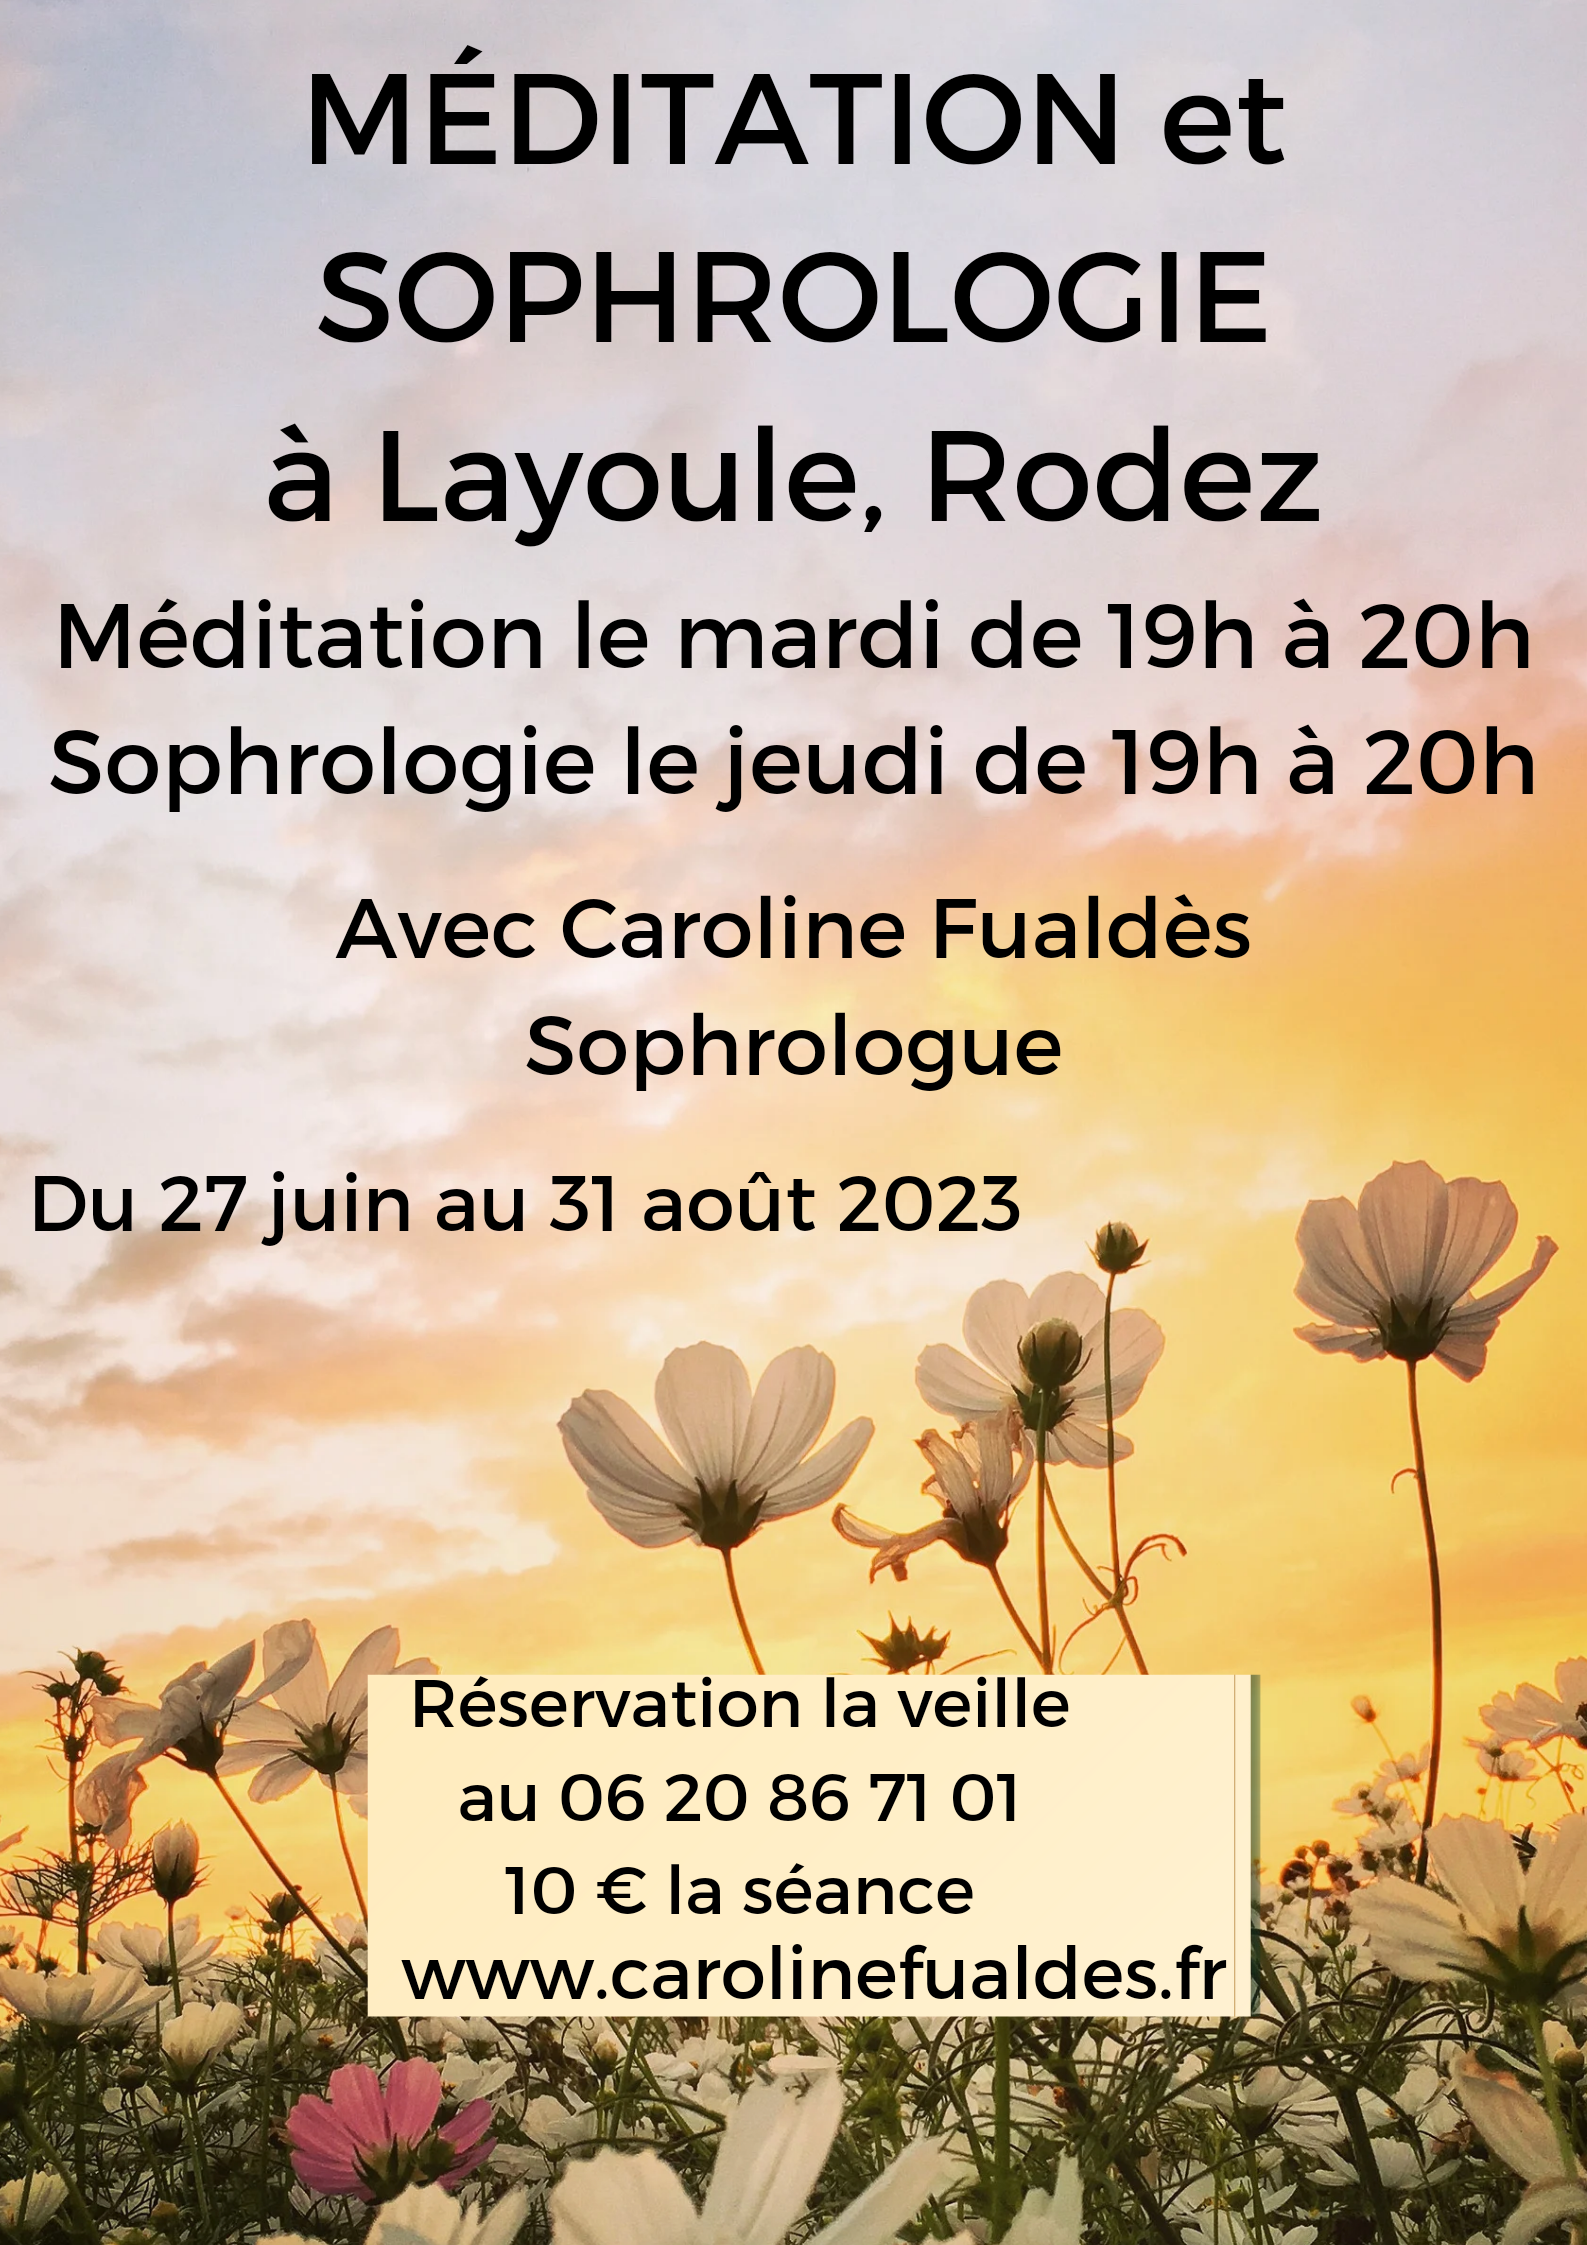 Méditation et sophrologie tout l’été sur les berges de Layoule, Rodez, Aveyron